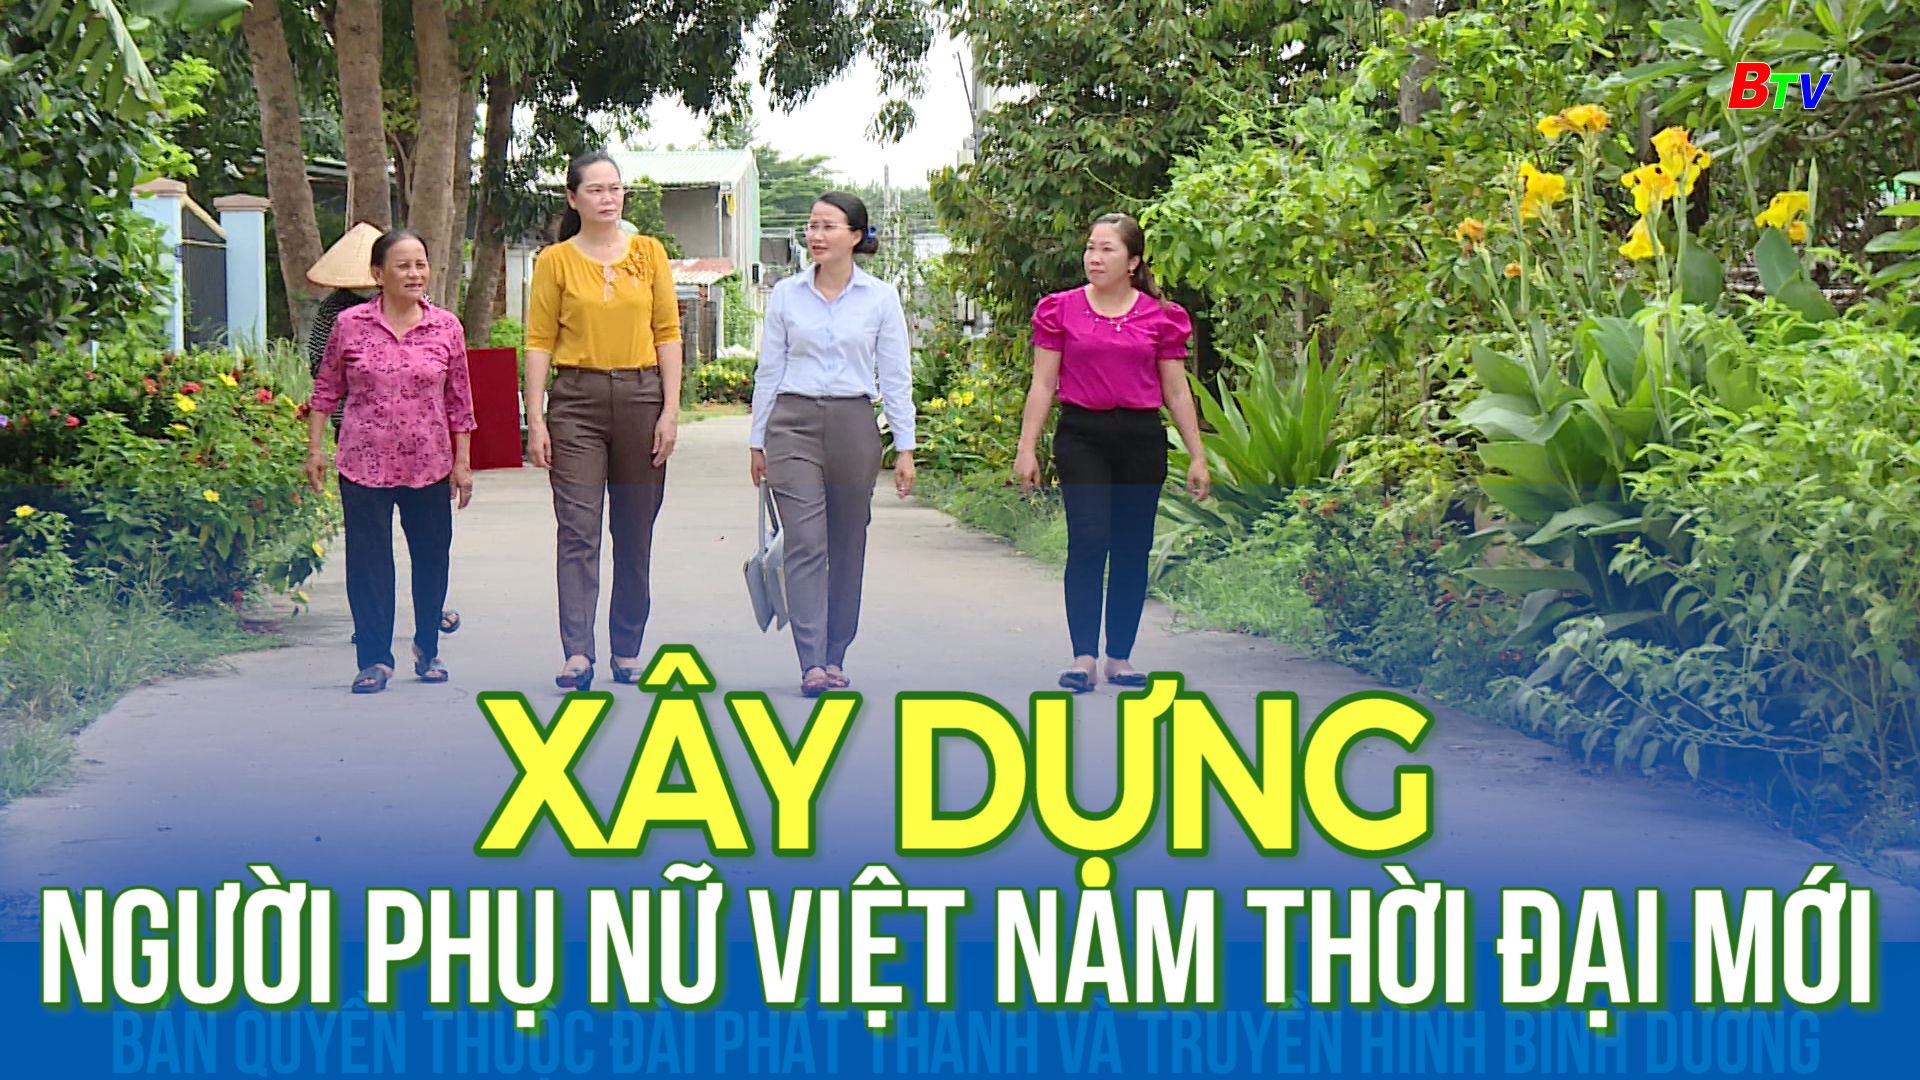 Xây dựng người phụ nữ Việt Nam thời đại mới